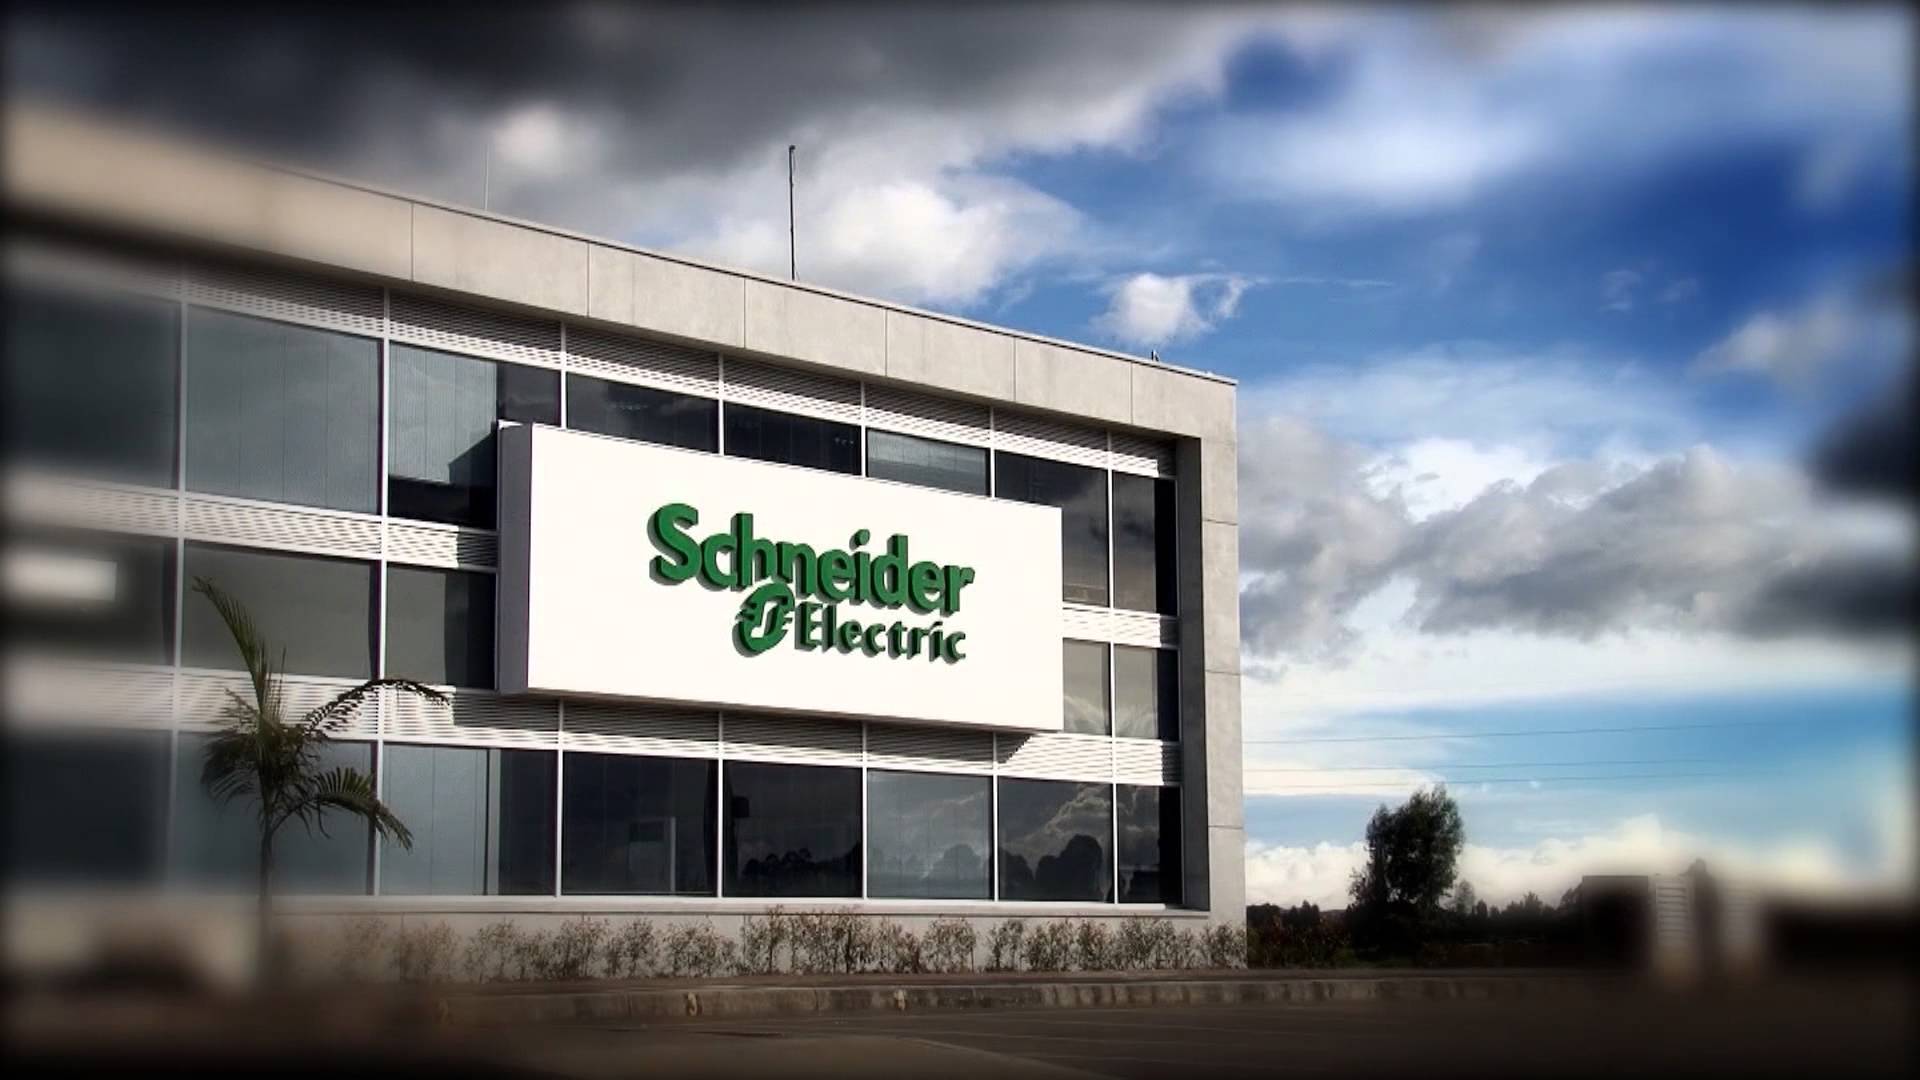 Schneider Electric’te üst düzey atama